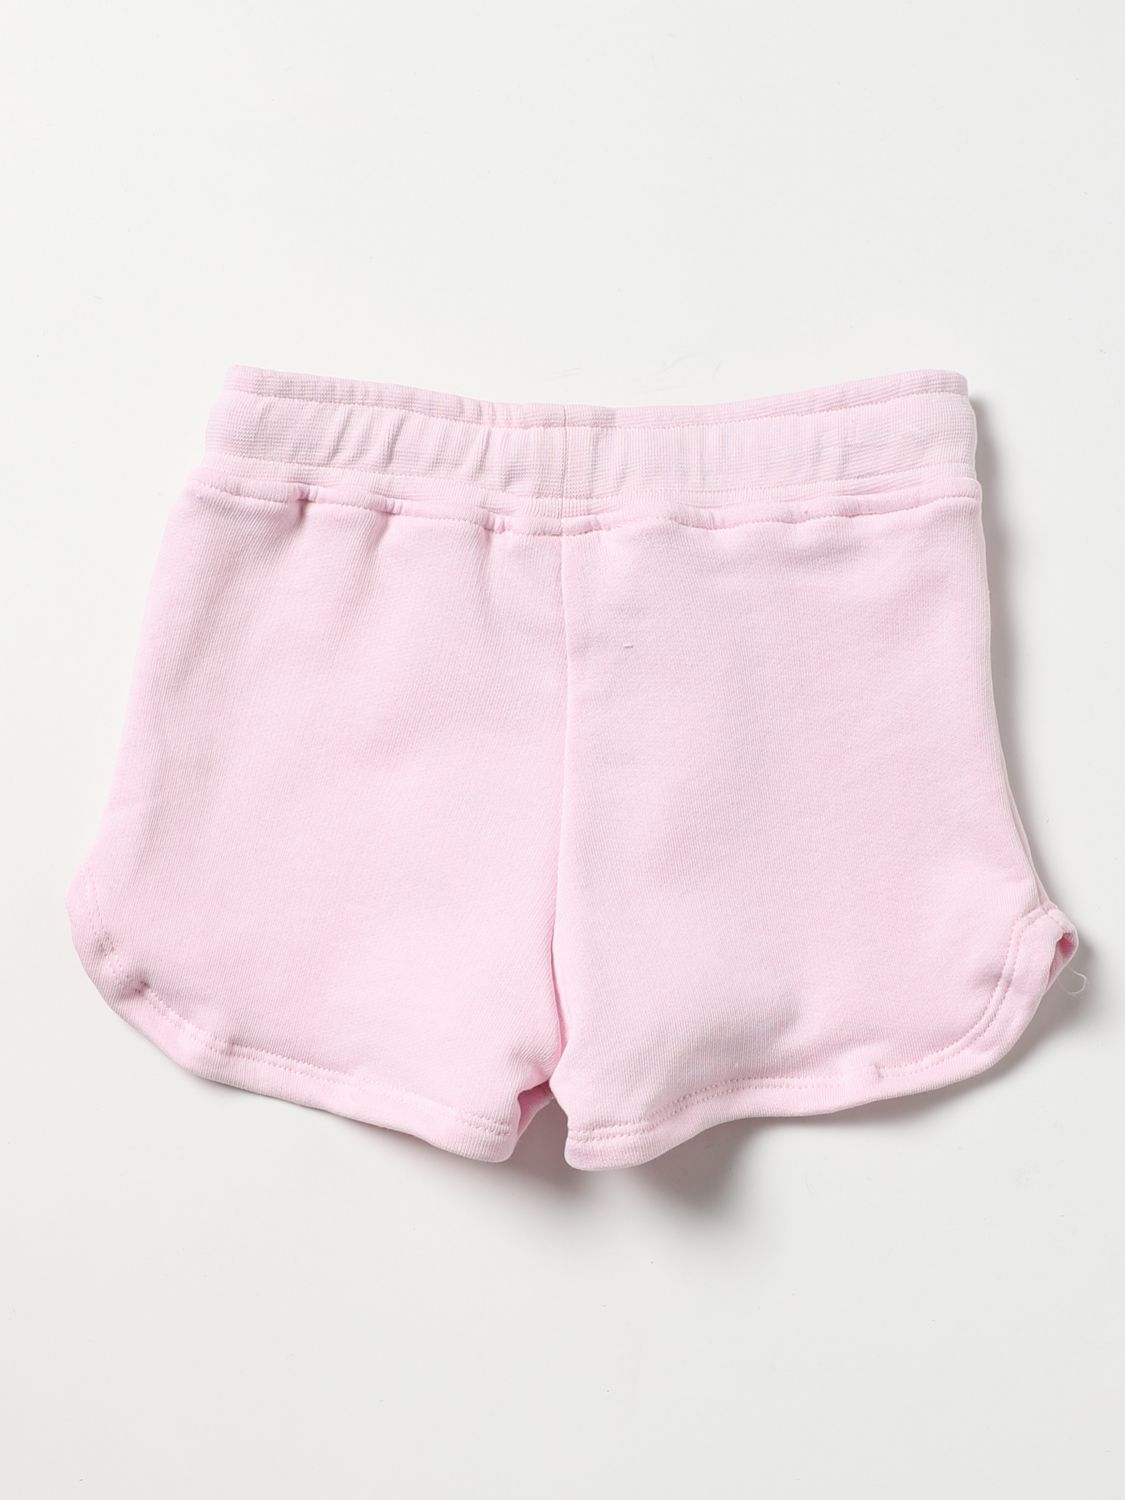 Pantalones cortos Mousse Danslabouche Kids: Pantalones cortos Mousse Danslabouche Kids para niña rosa 2